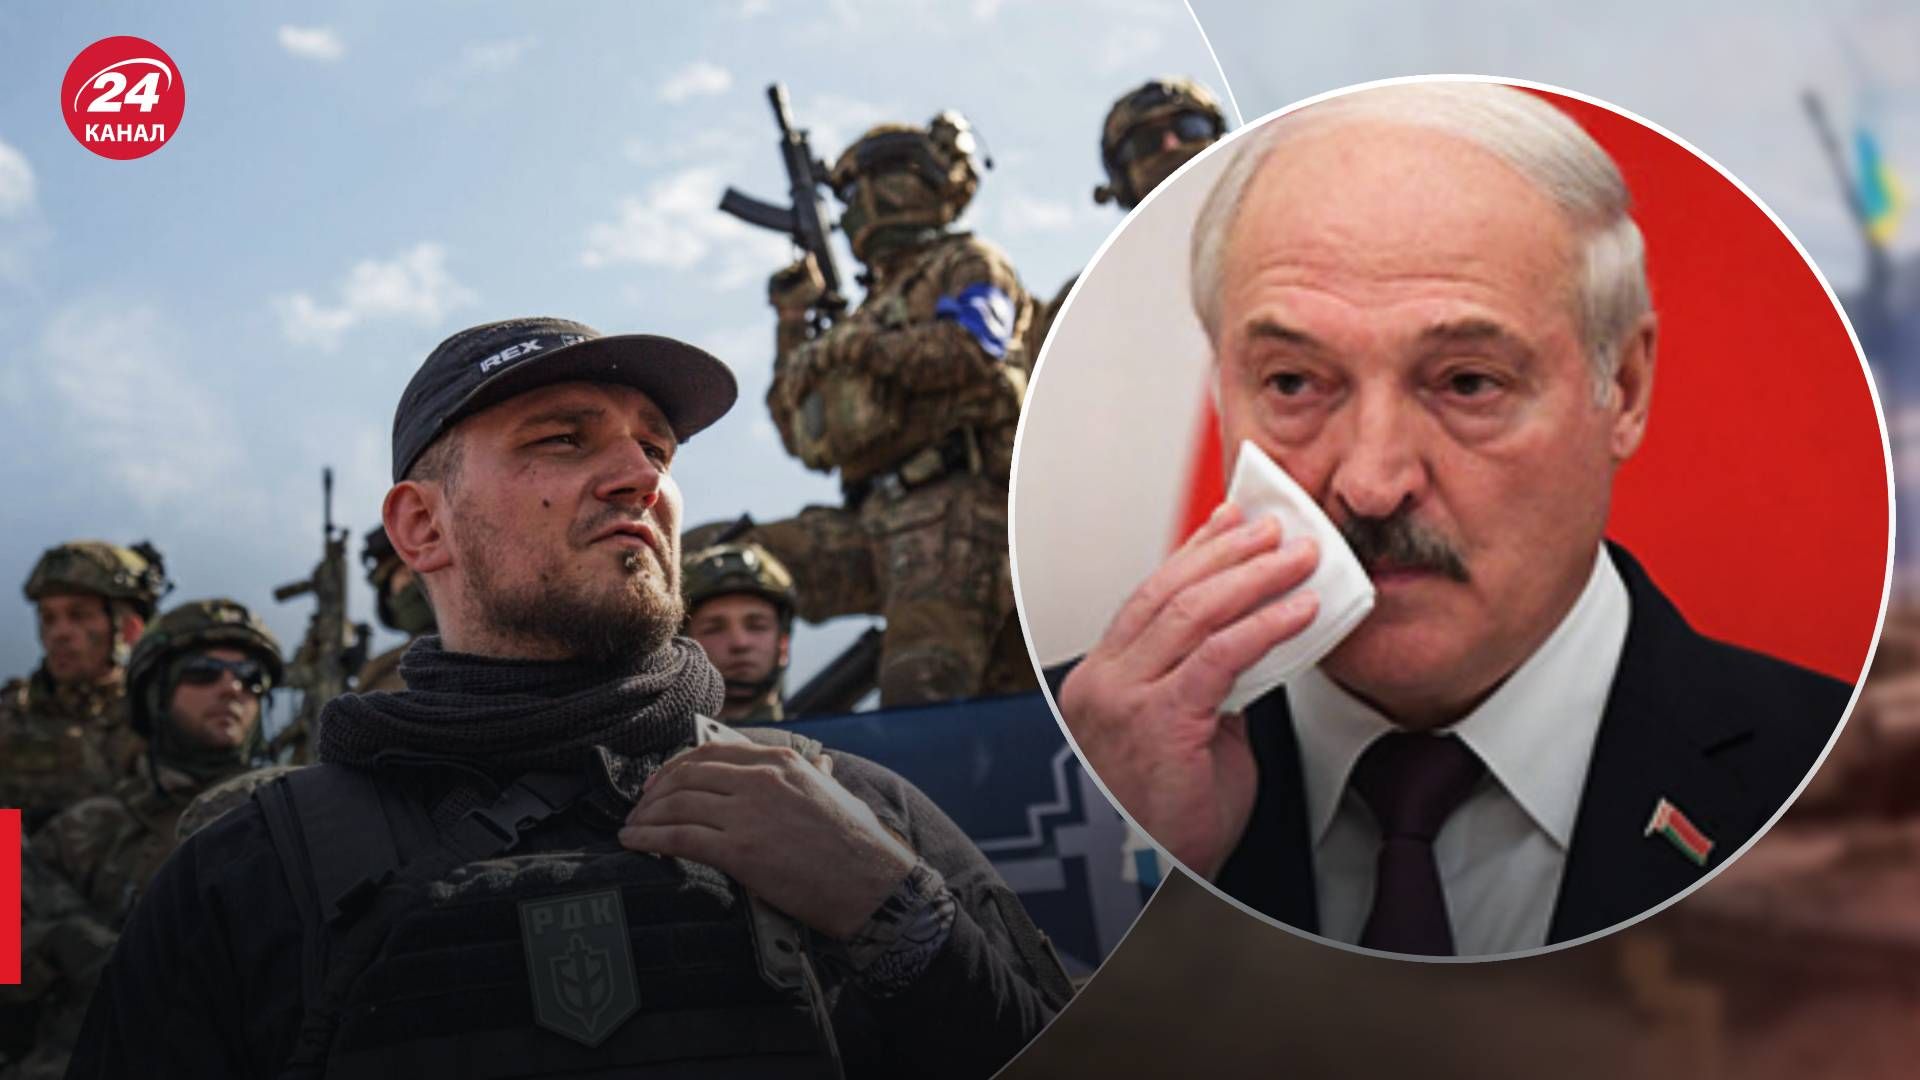 Рекция Лукашенко на события в Белгородской области - Жданов предположил действия - 24 Канал